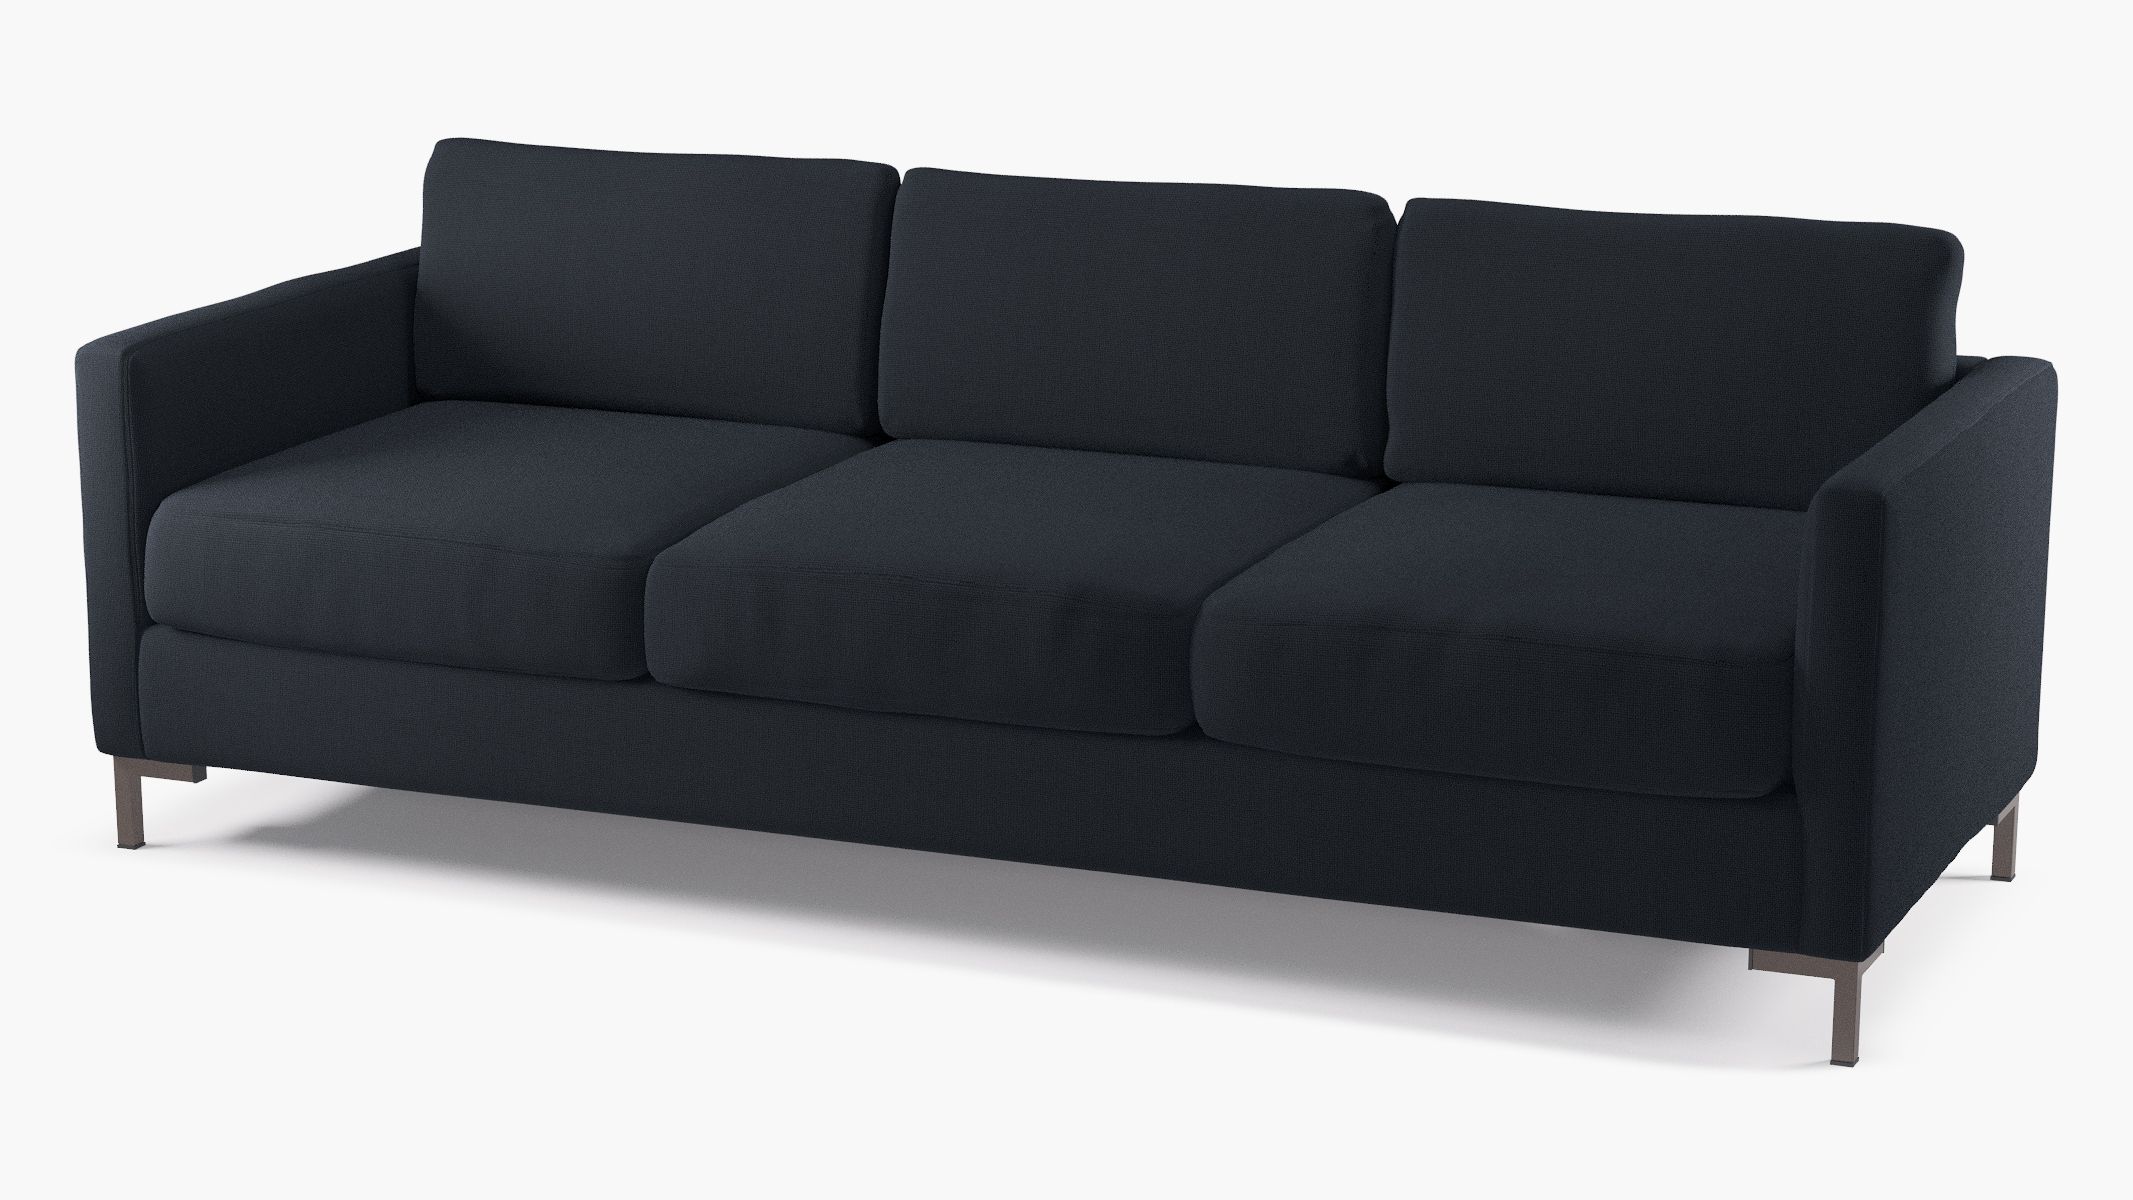 Navy Linen Upholstered Custom Modern Sofa | The Inside Furniture In Navy Linen Coil Sofas (View 12 of 20)